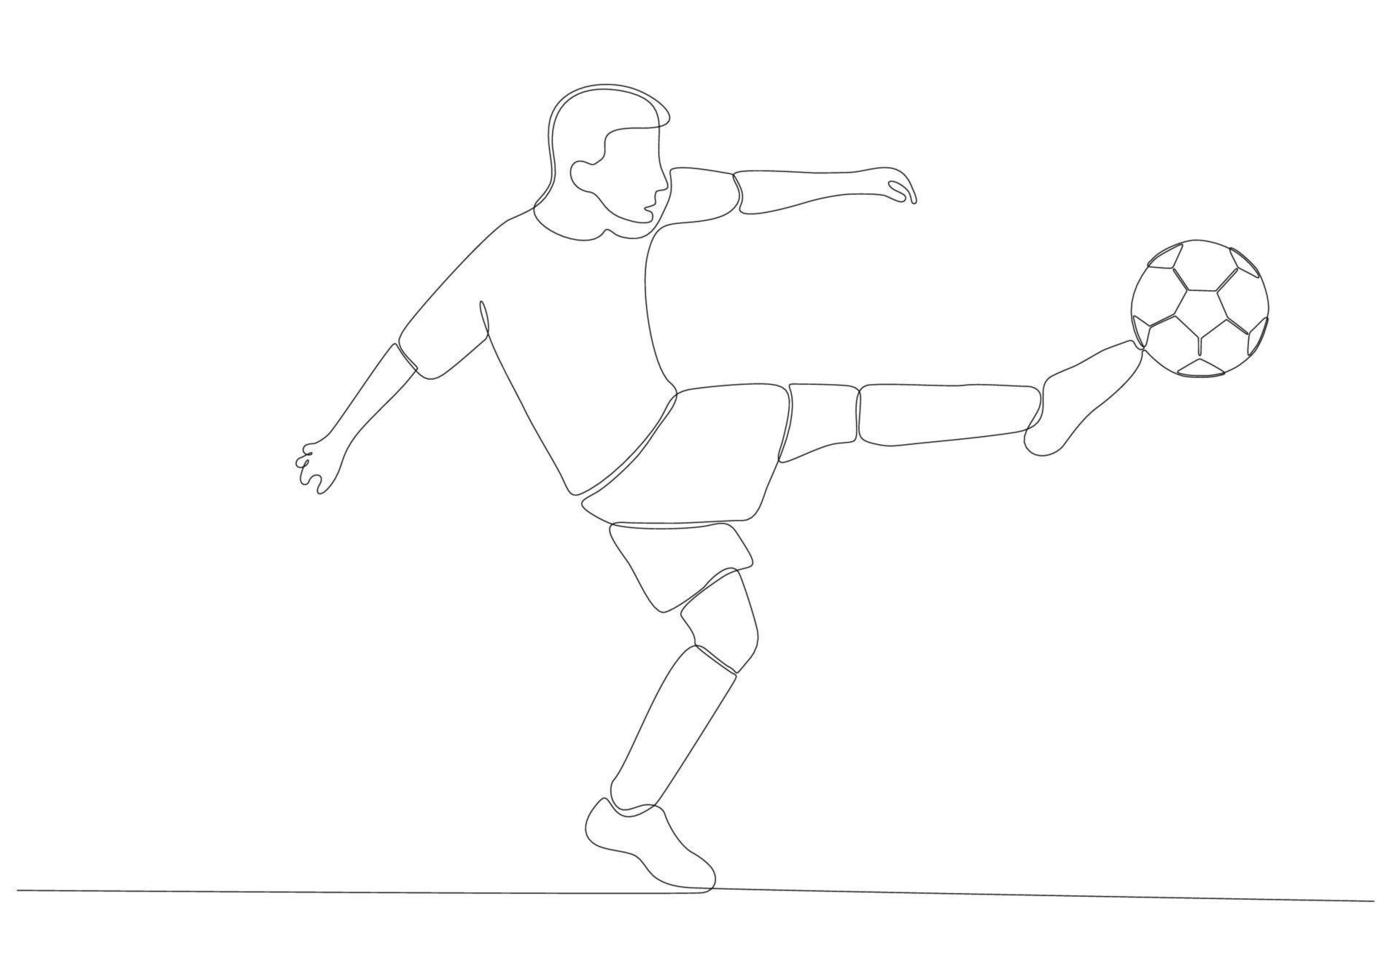 doorlopende lijntekening van mannelijke voetballer die de bal schopt. enkele lijn kunst van jonge vrouwelijke voetballer dribbelen en jongleren met de bal. vector illustratie